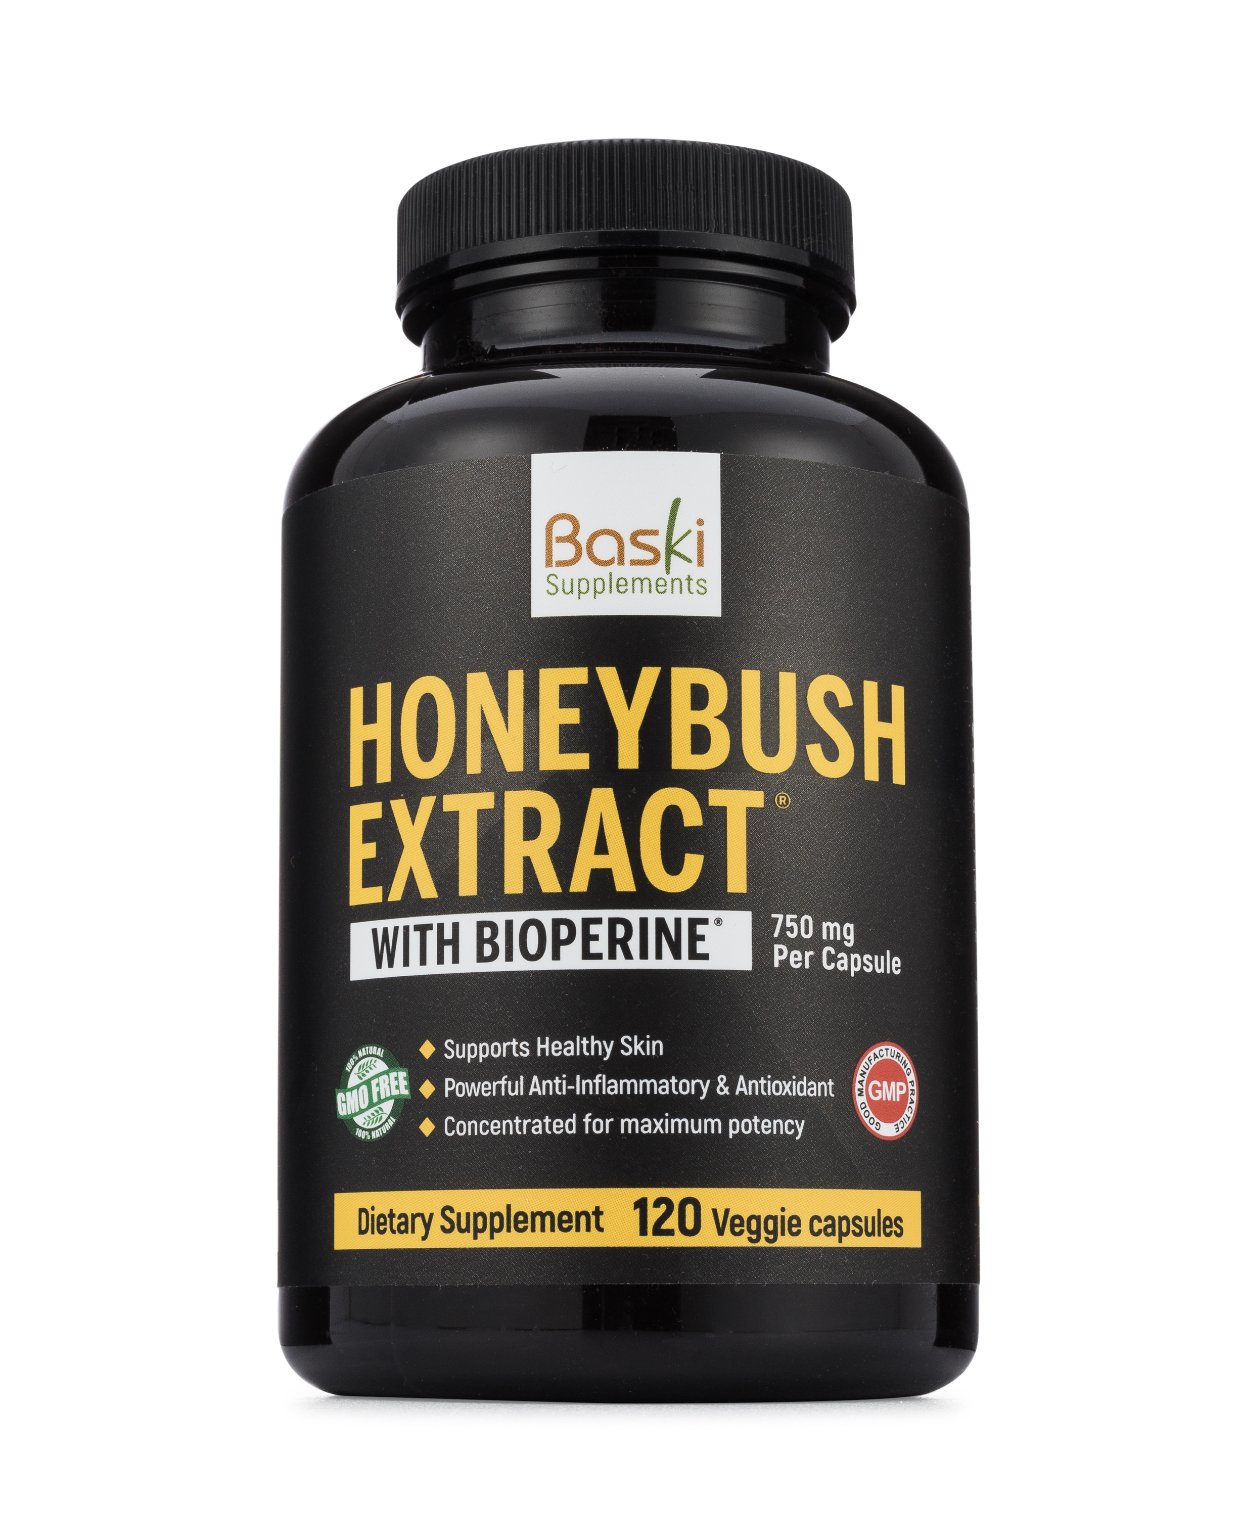 Honeybush Extract Pills